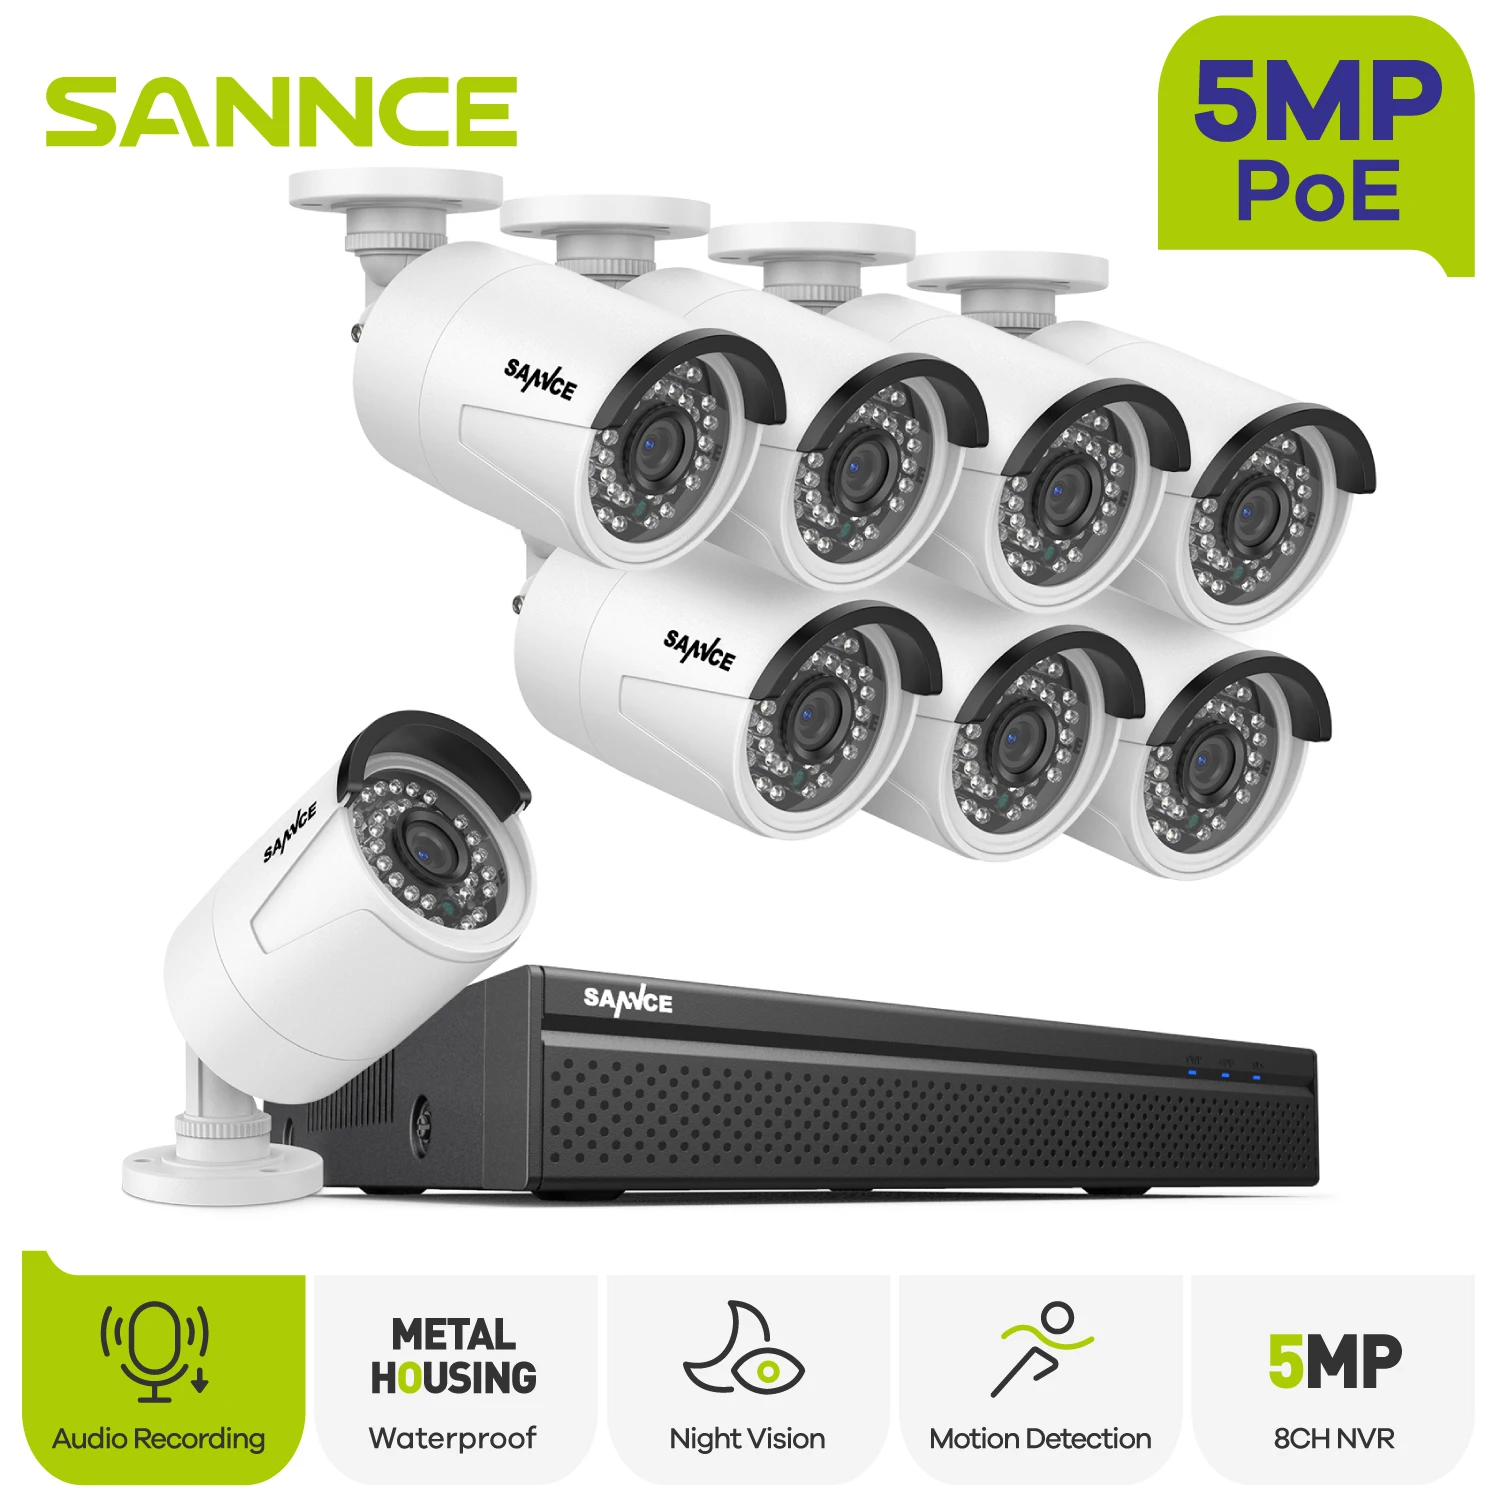 Tanie SANNCE 5MP POE kamery do monitoringu System 8CH H.264 +